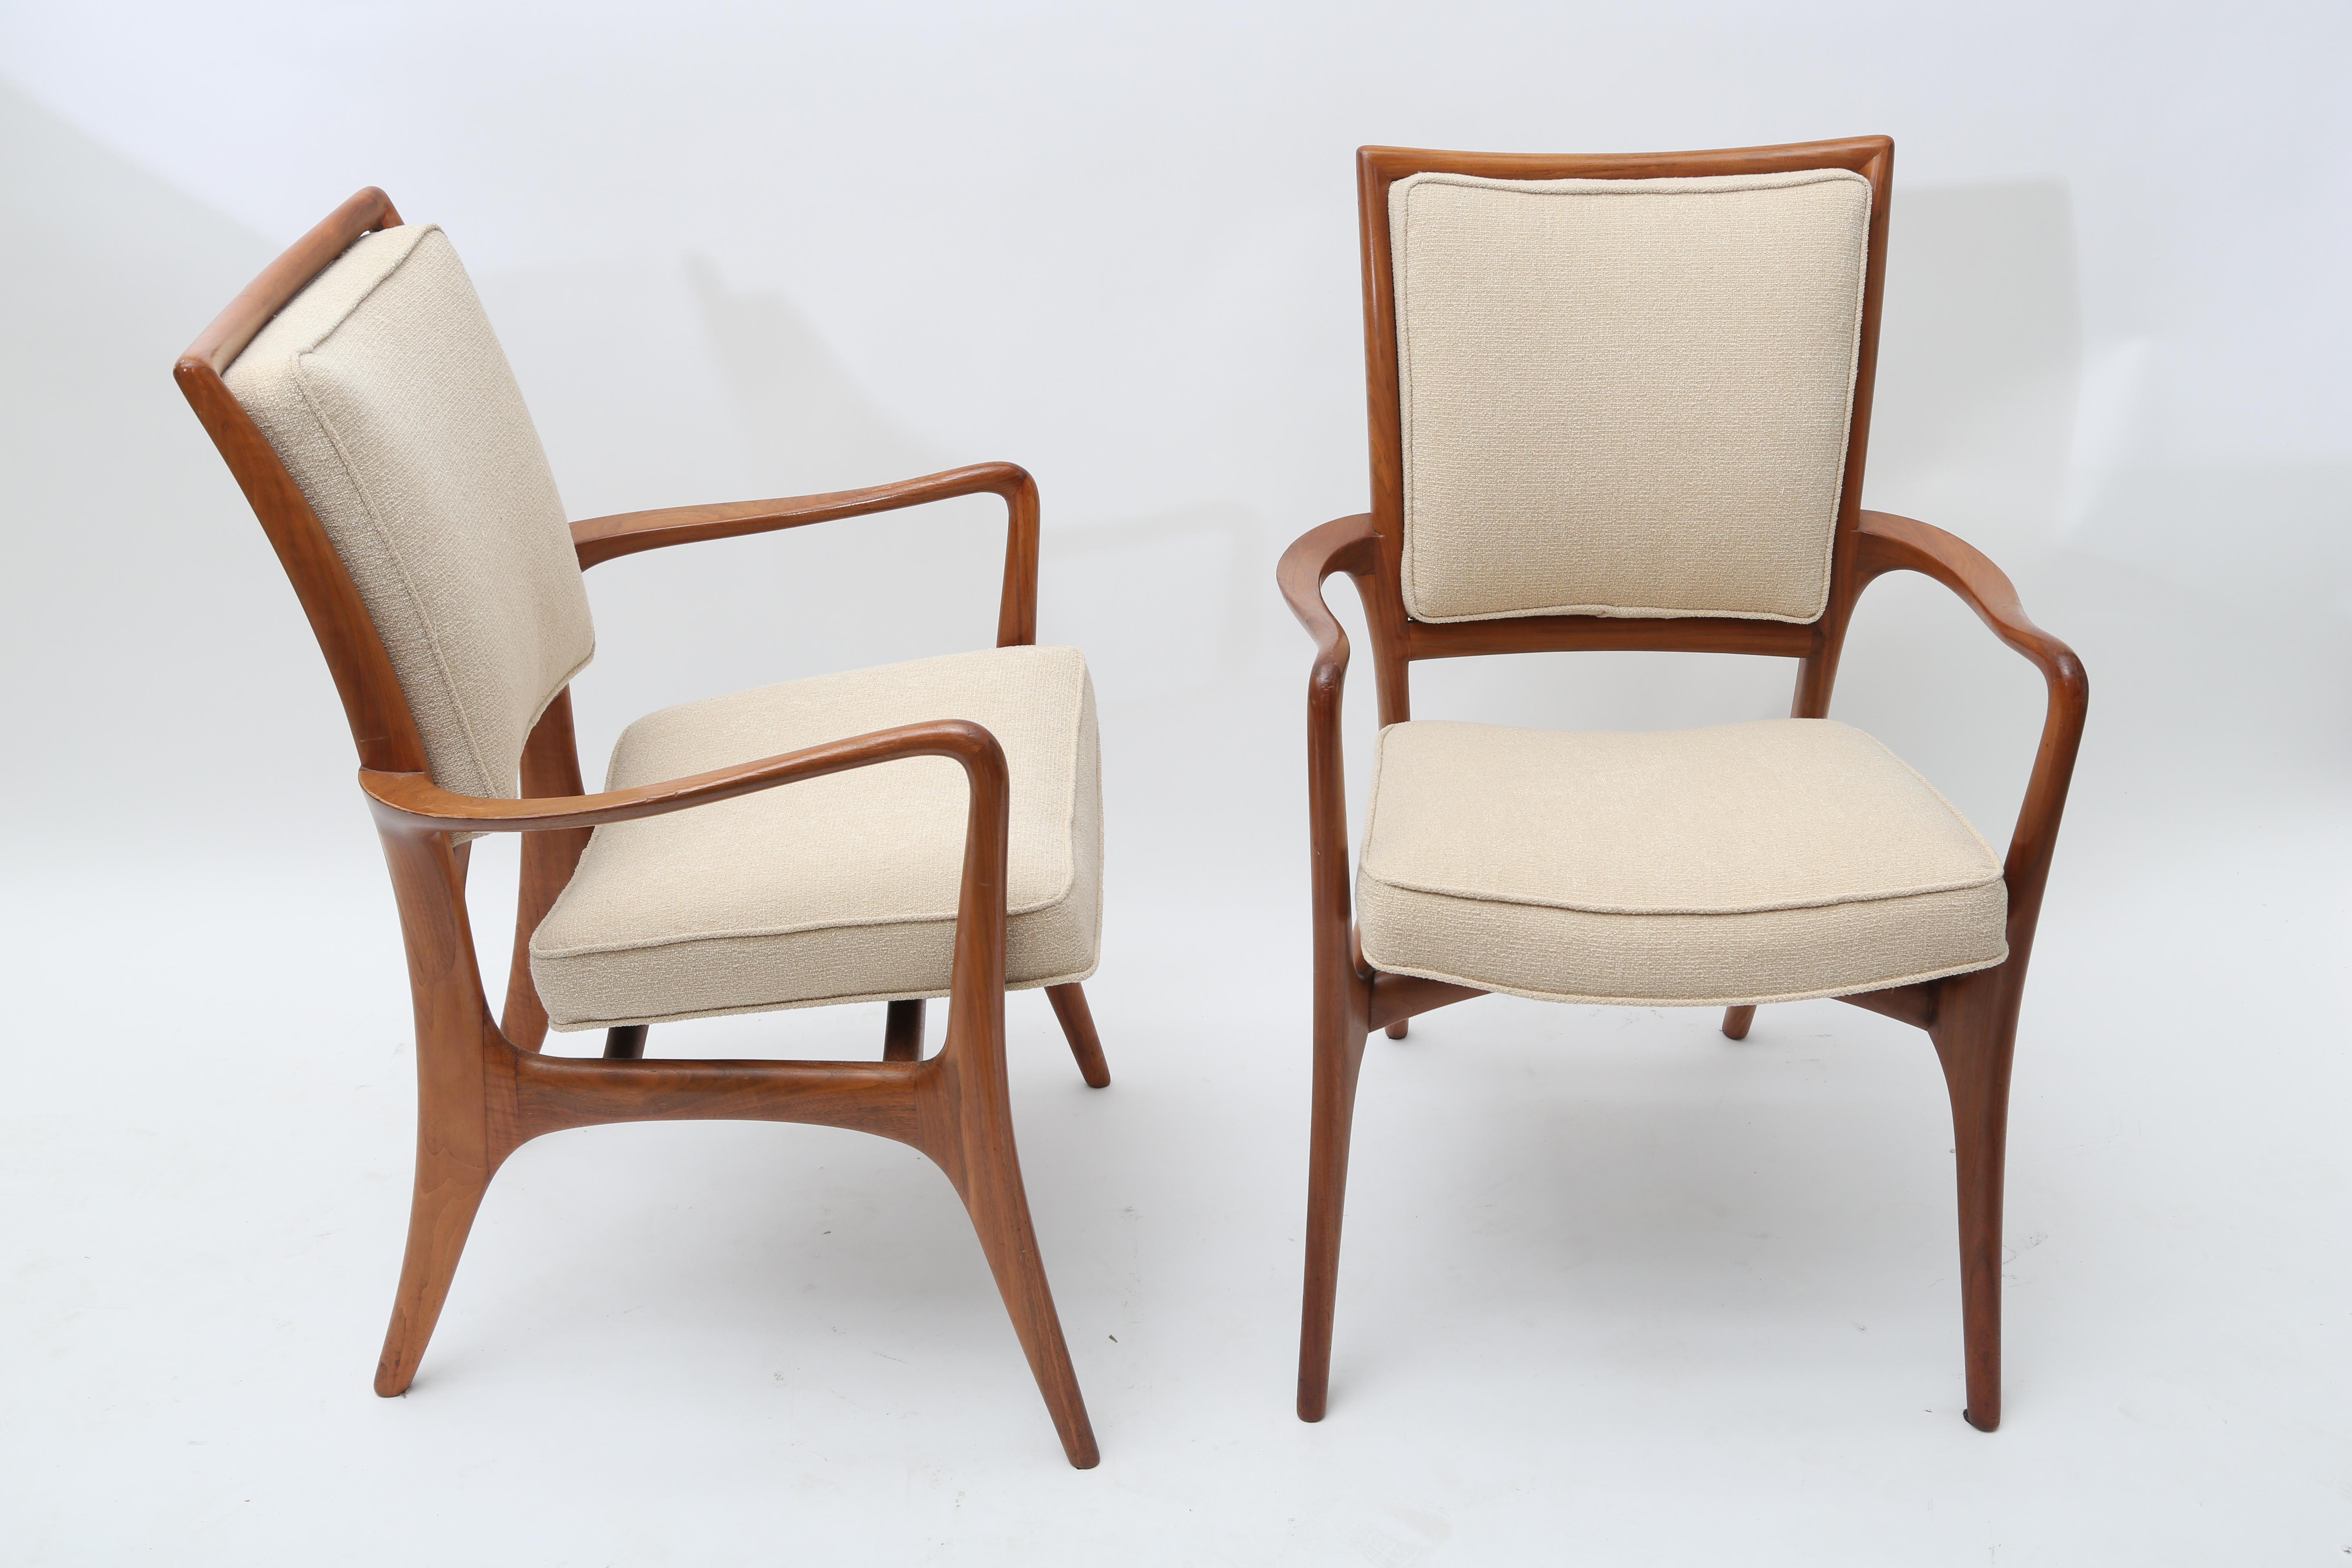 Ensemble inhabituel de 6 fauteuils, modèle 175A
De la période la plus emblématique du design/One de Vladimir Kagan.
Rembourrage professionnel.
Signatures de marque.